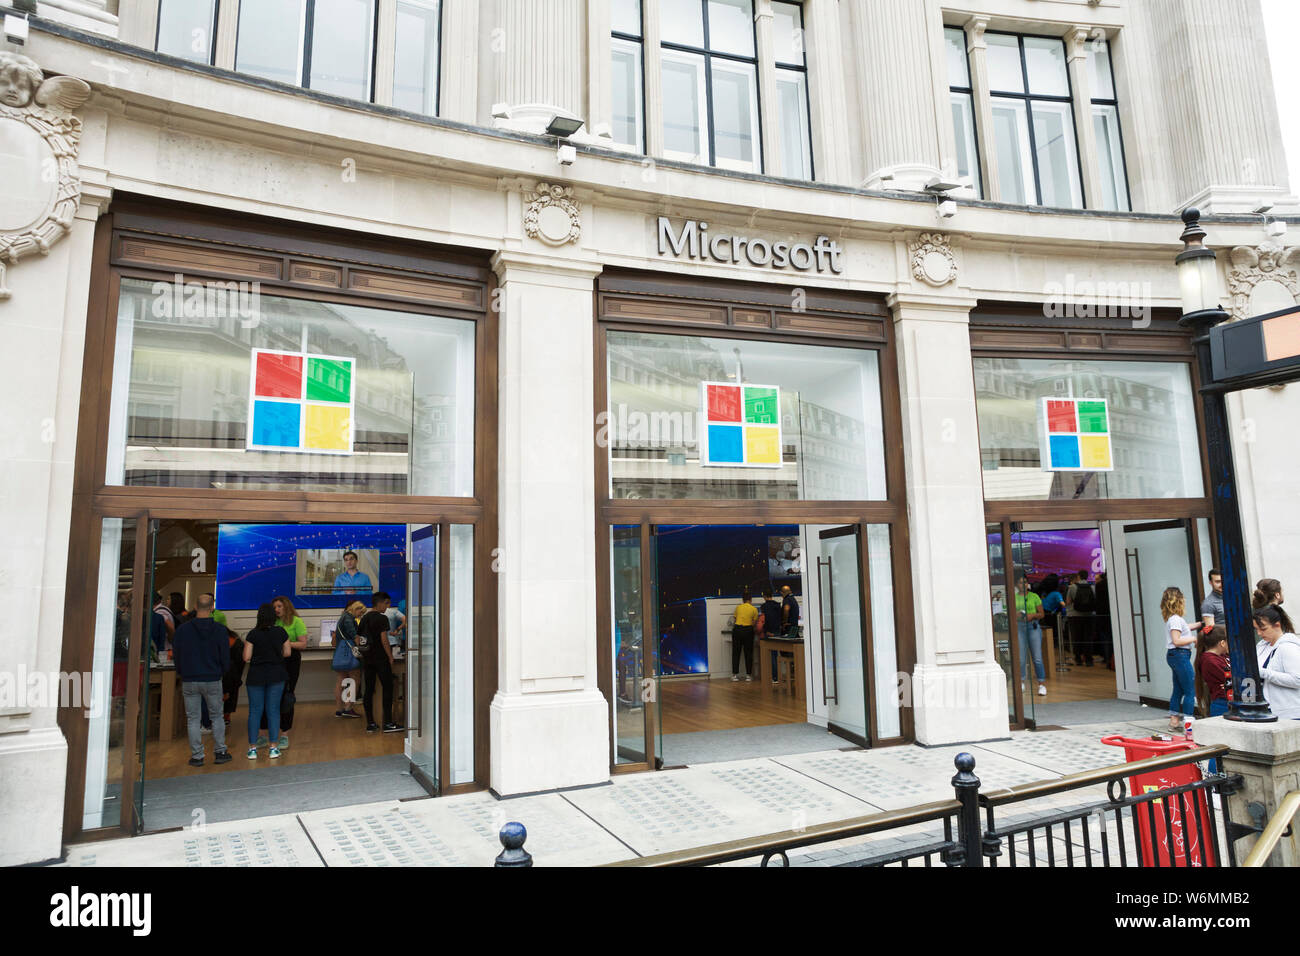 Microsoft Store, London, UK. Stock Photo